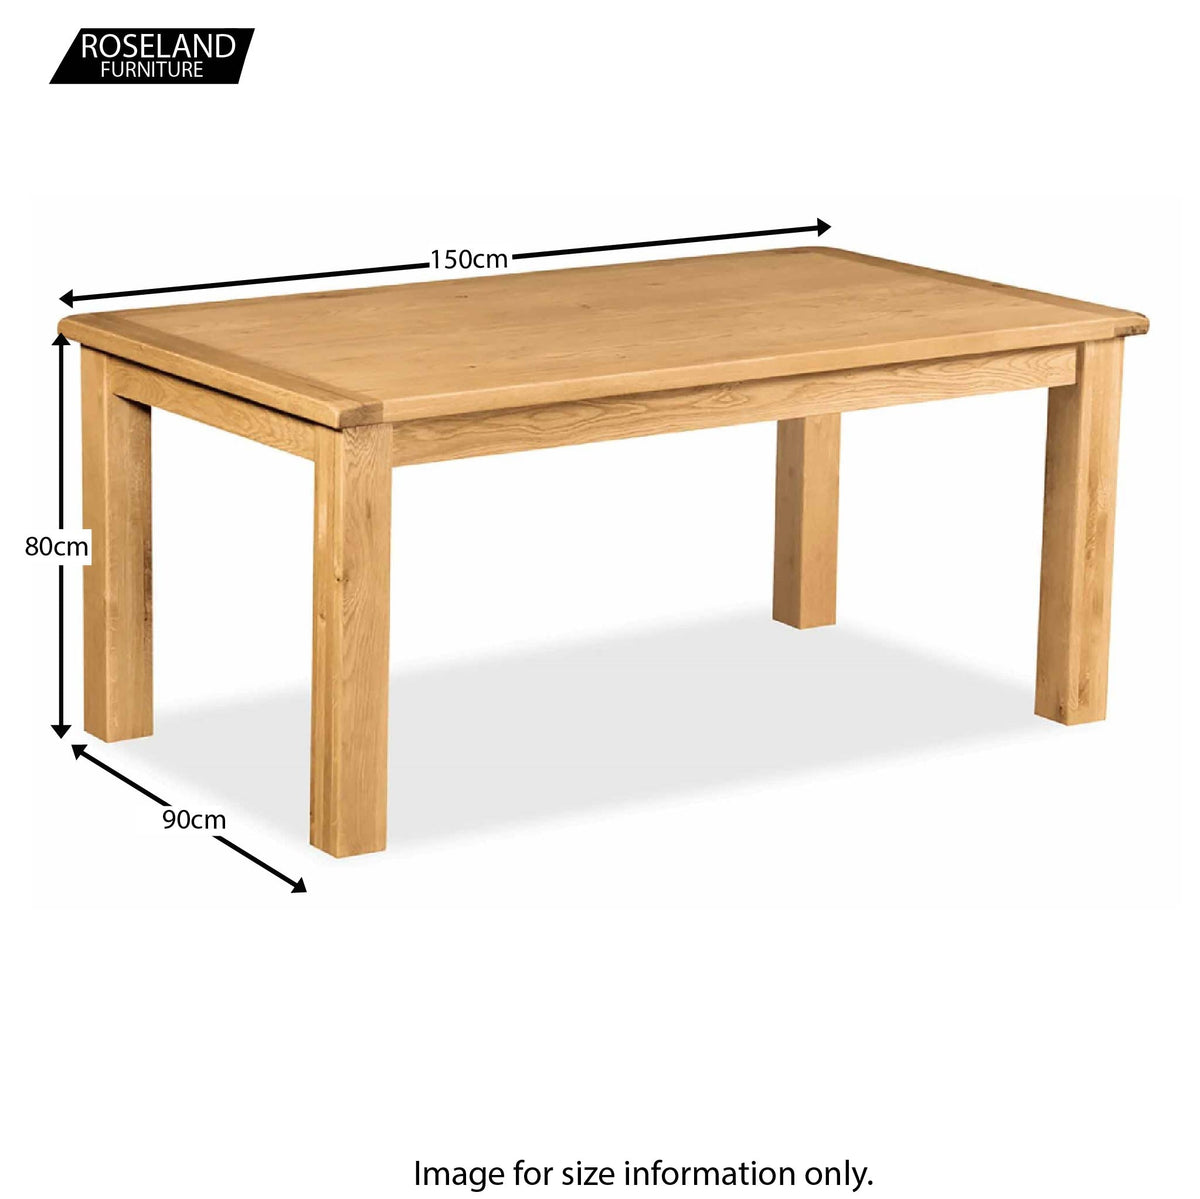 Zelah Oak 150cm Dining Table - Size Guide